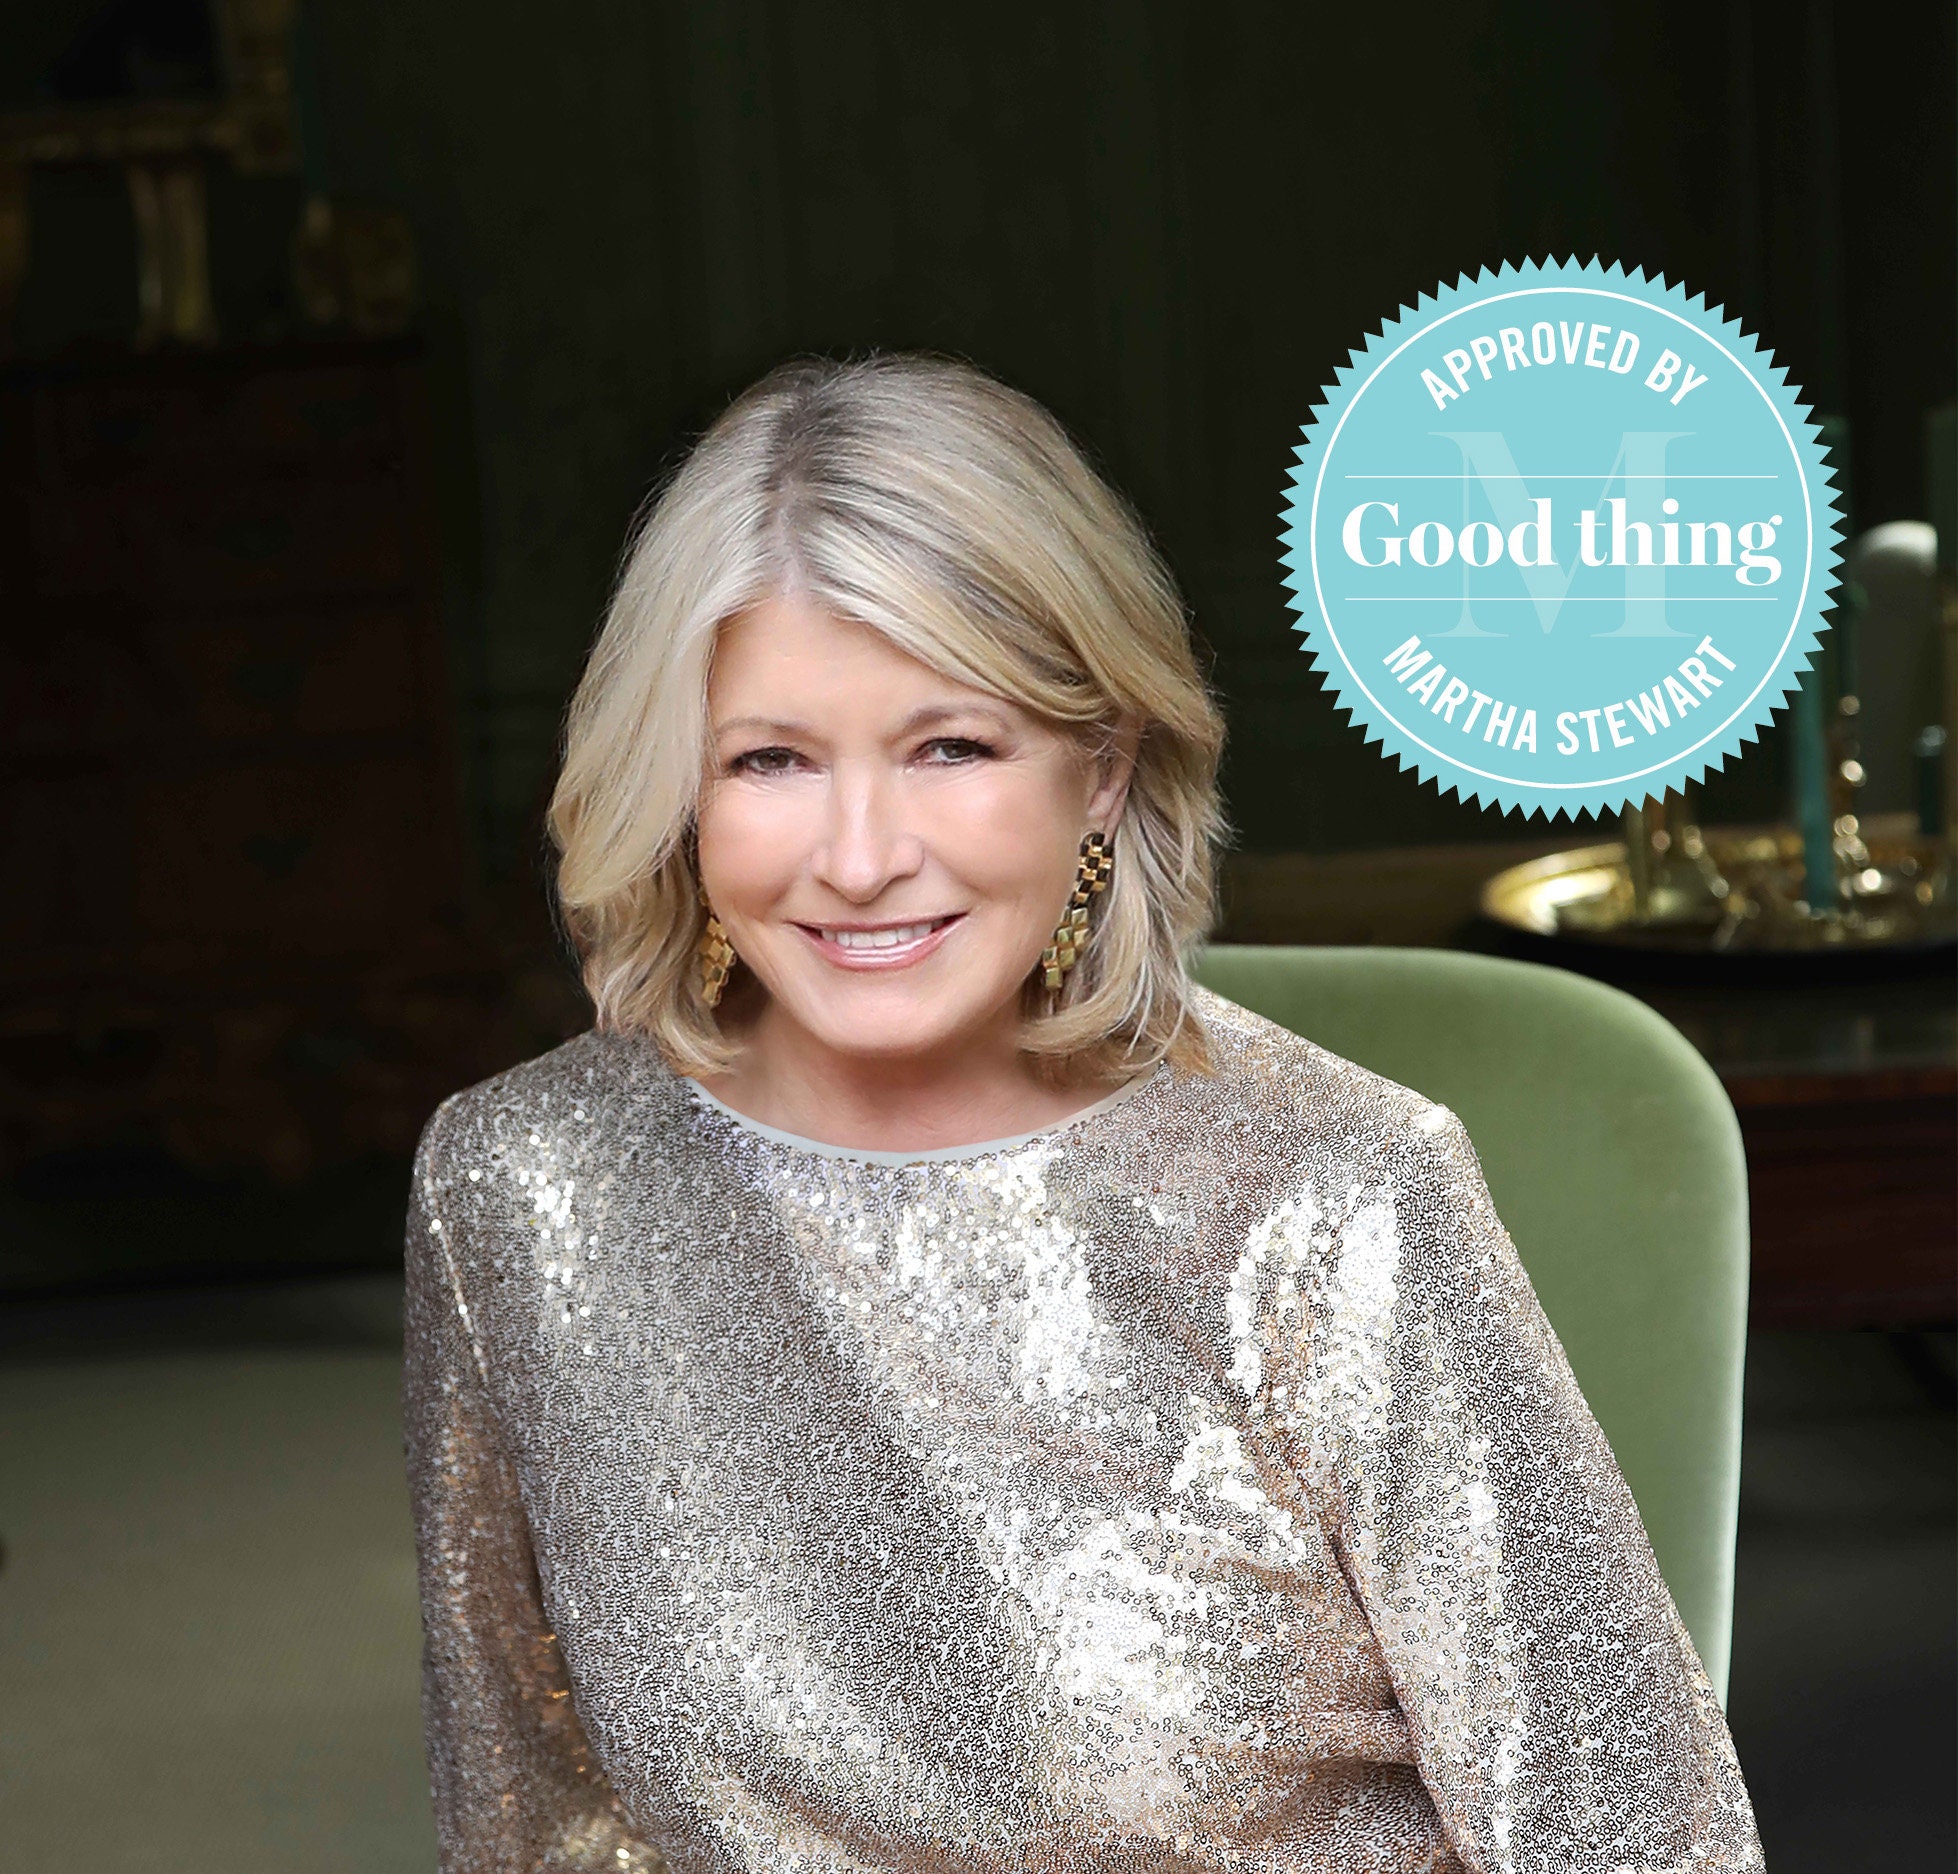 Martha Stewart - Martha Stewart's complete collection of essential